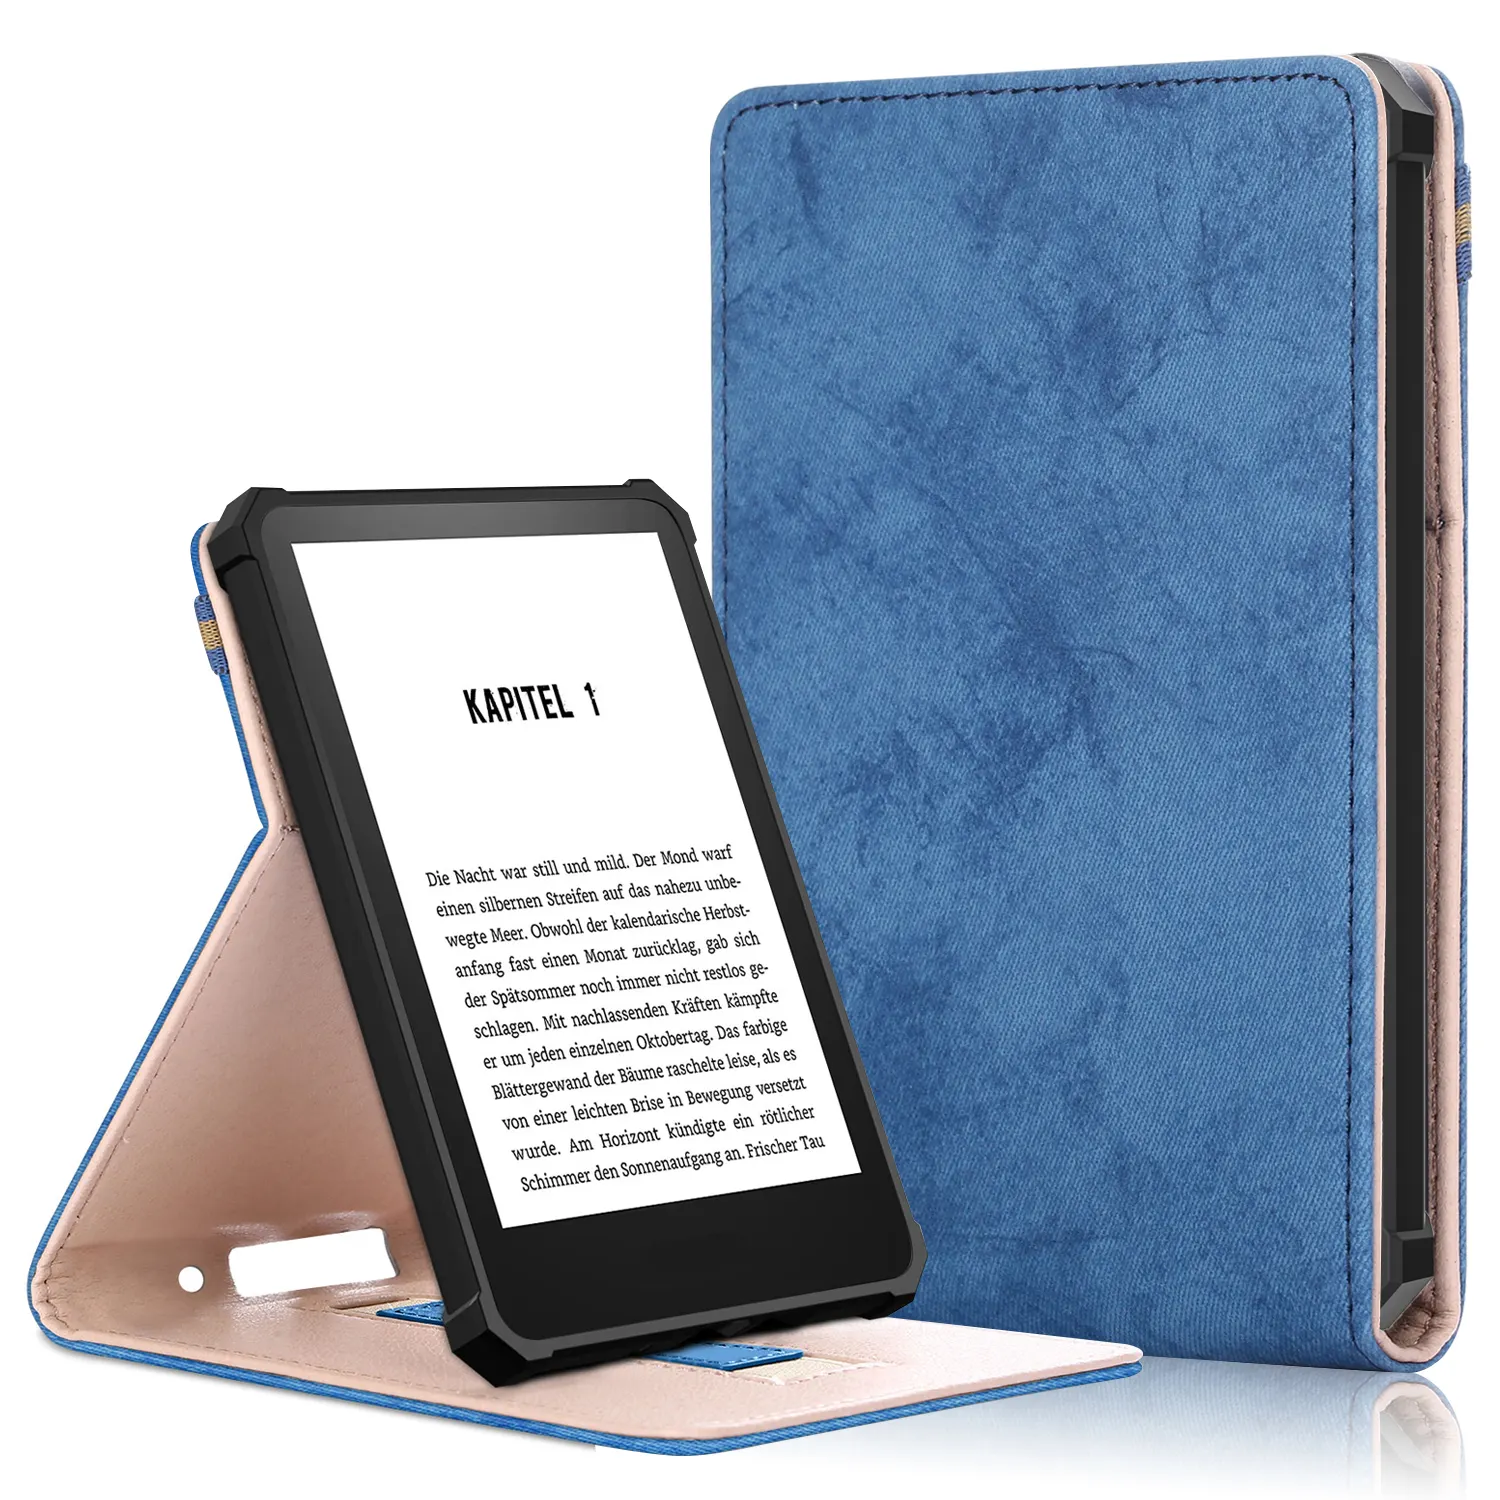 Casing Kulit Penutup TPU Kualitas Tinggi untuk Kindle 2022 11 dengan Tali Tangan 2022 11 dengan Tali Tangan